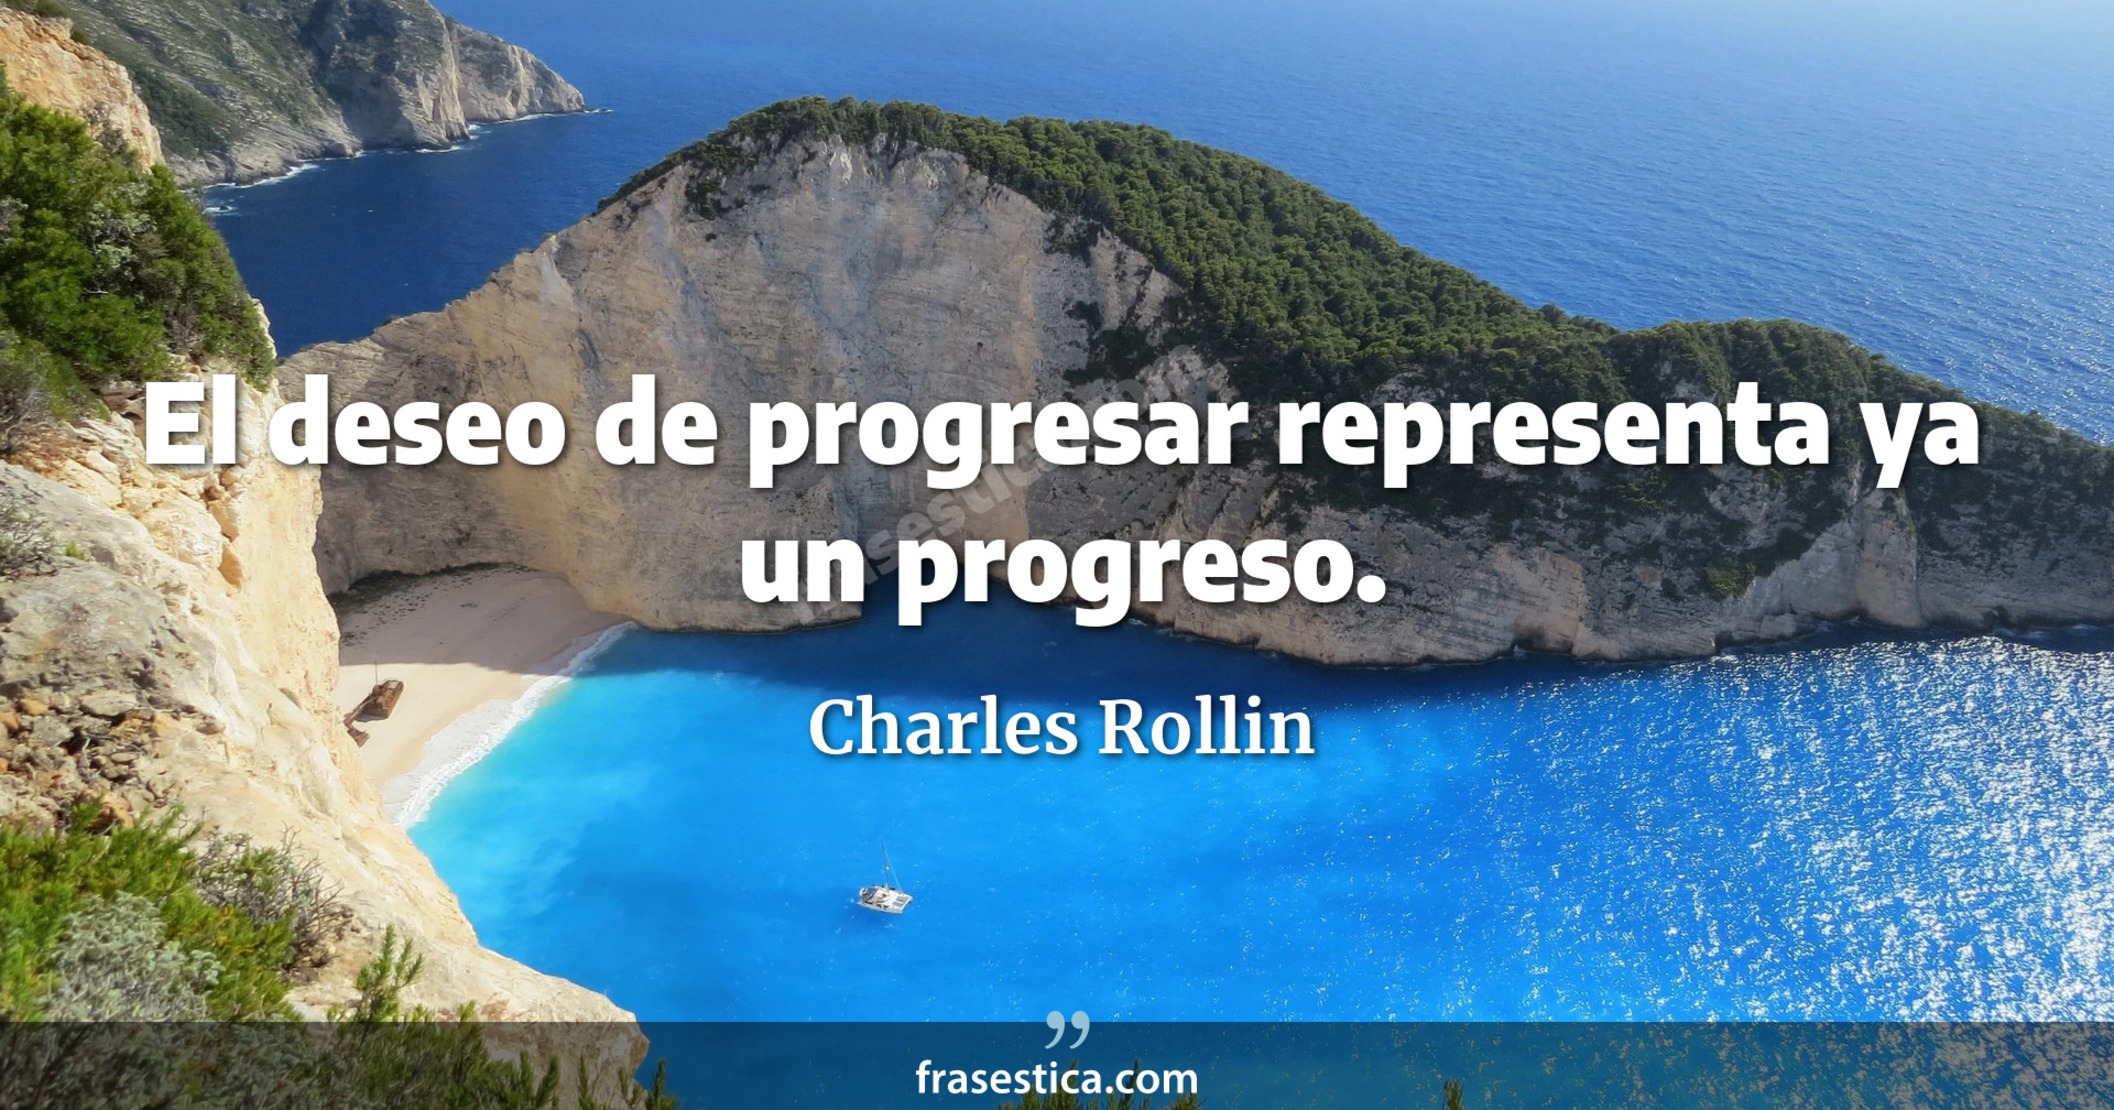 El deseo de progresar representa ya un progreso. - Charles Rollin